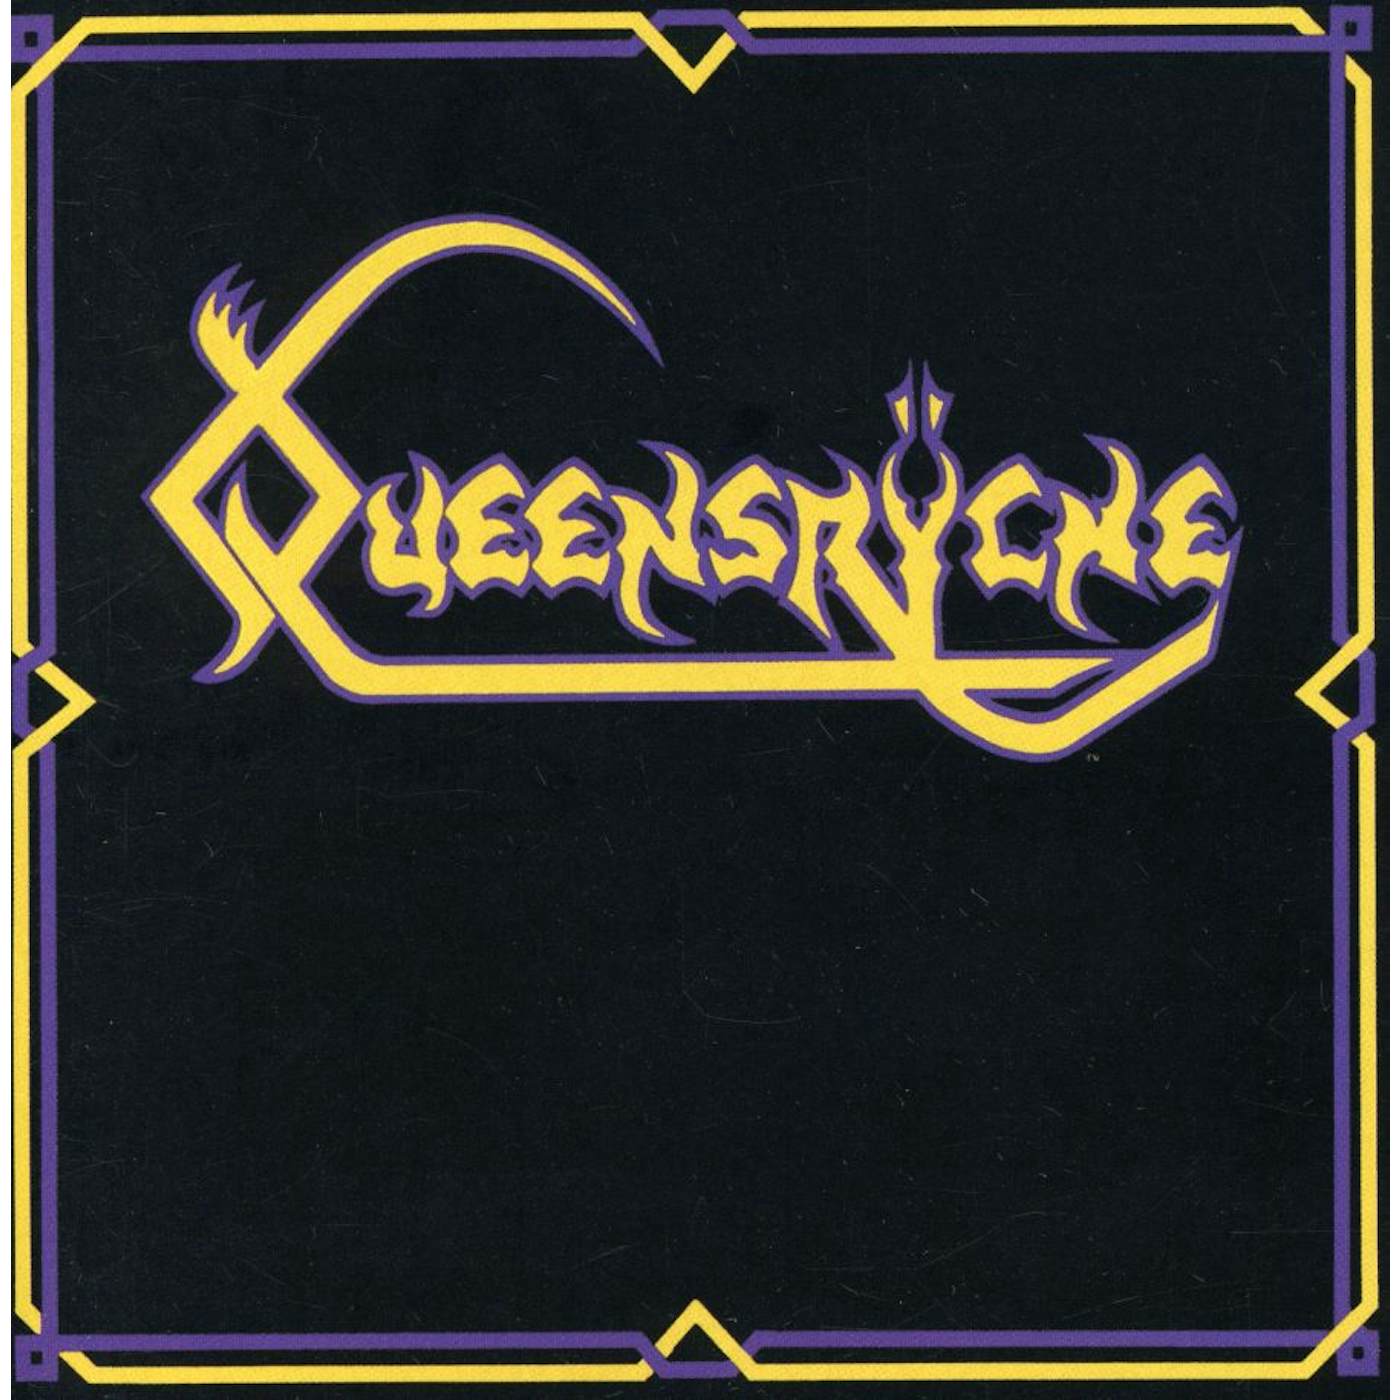 Queensrÿche CD